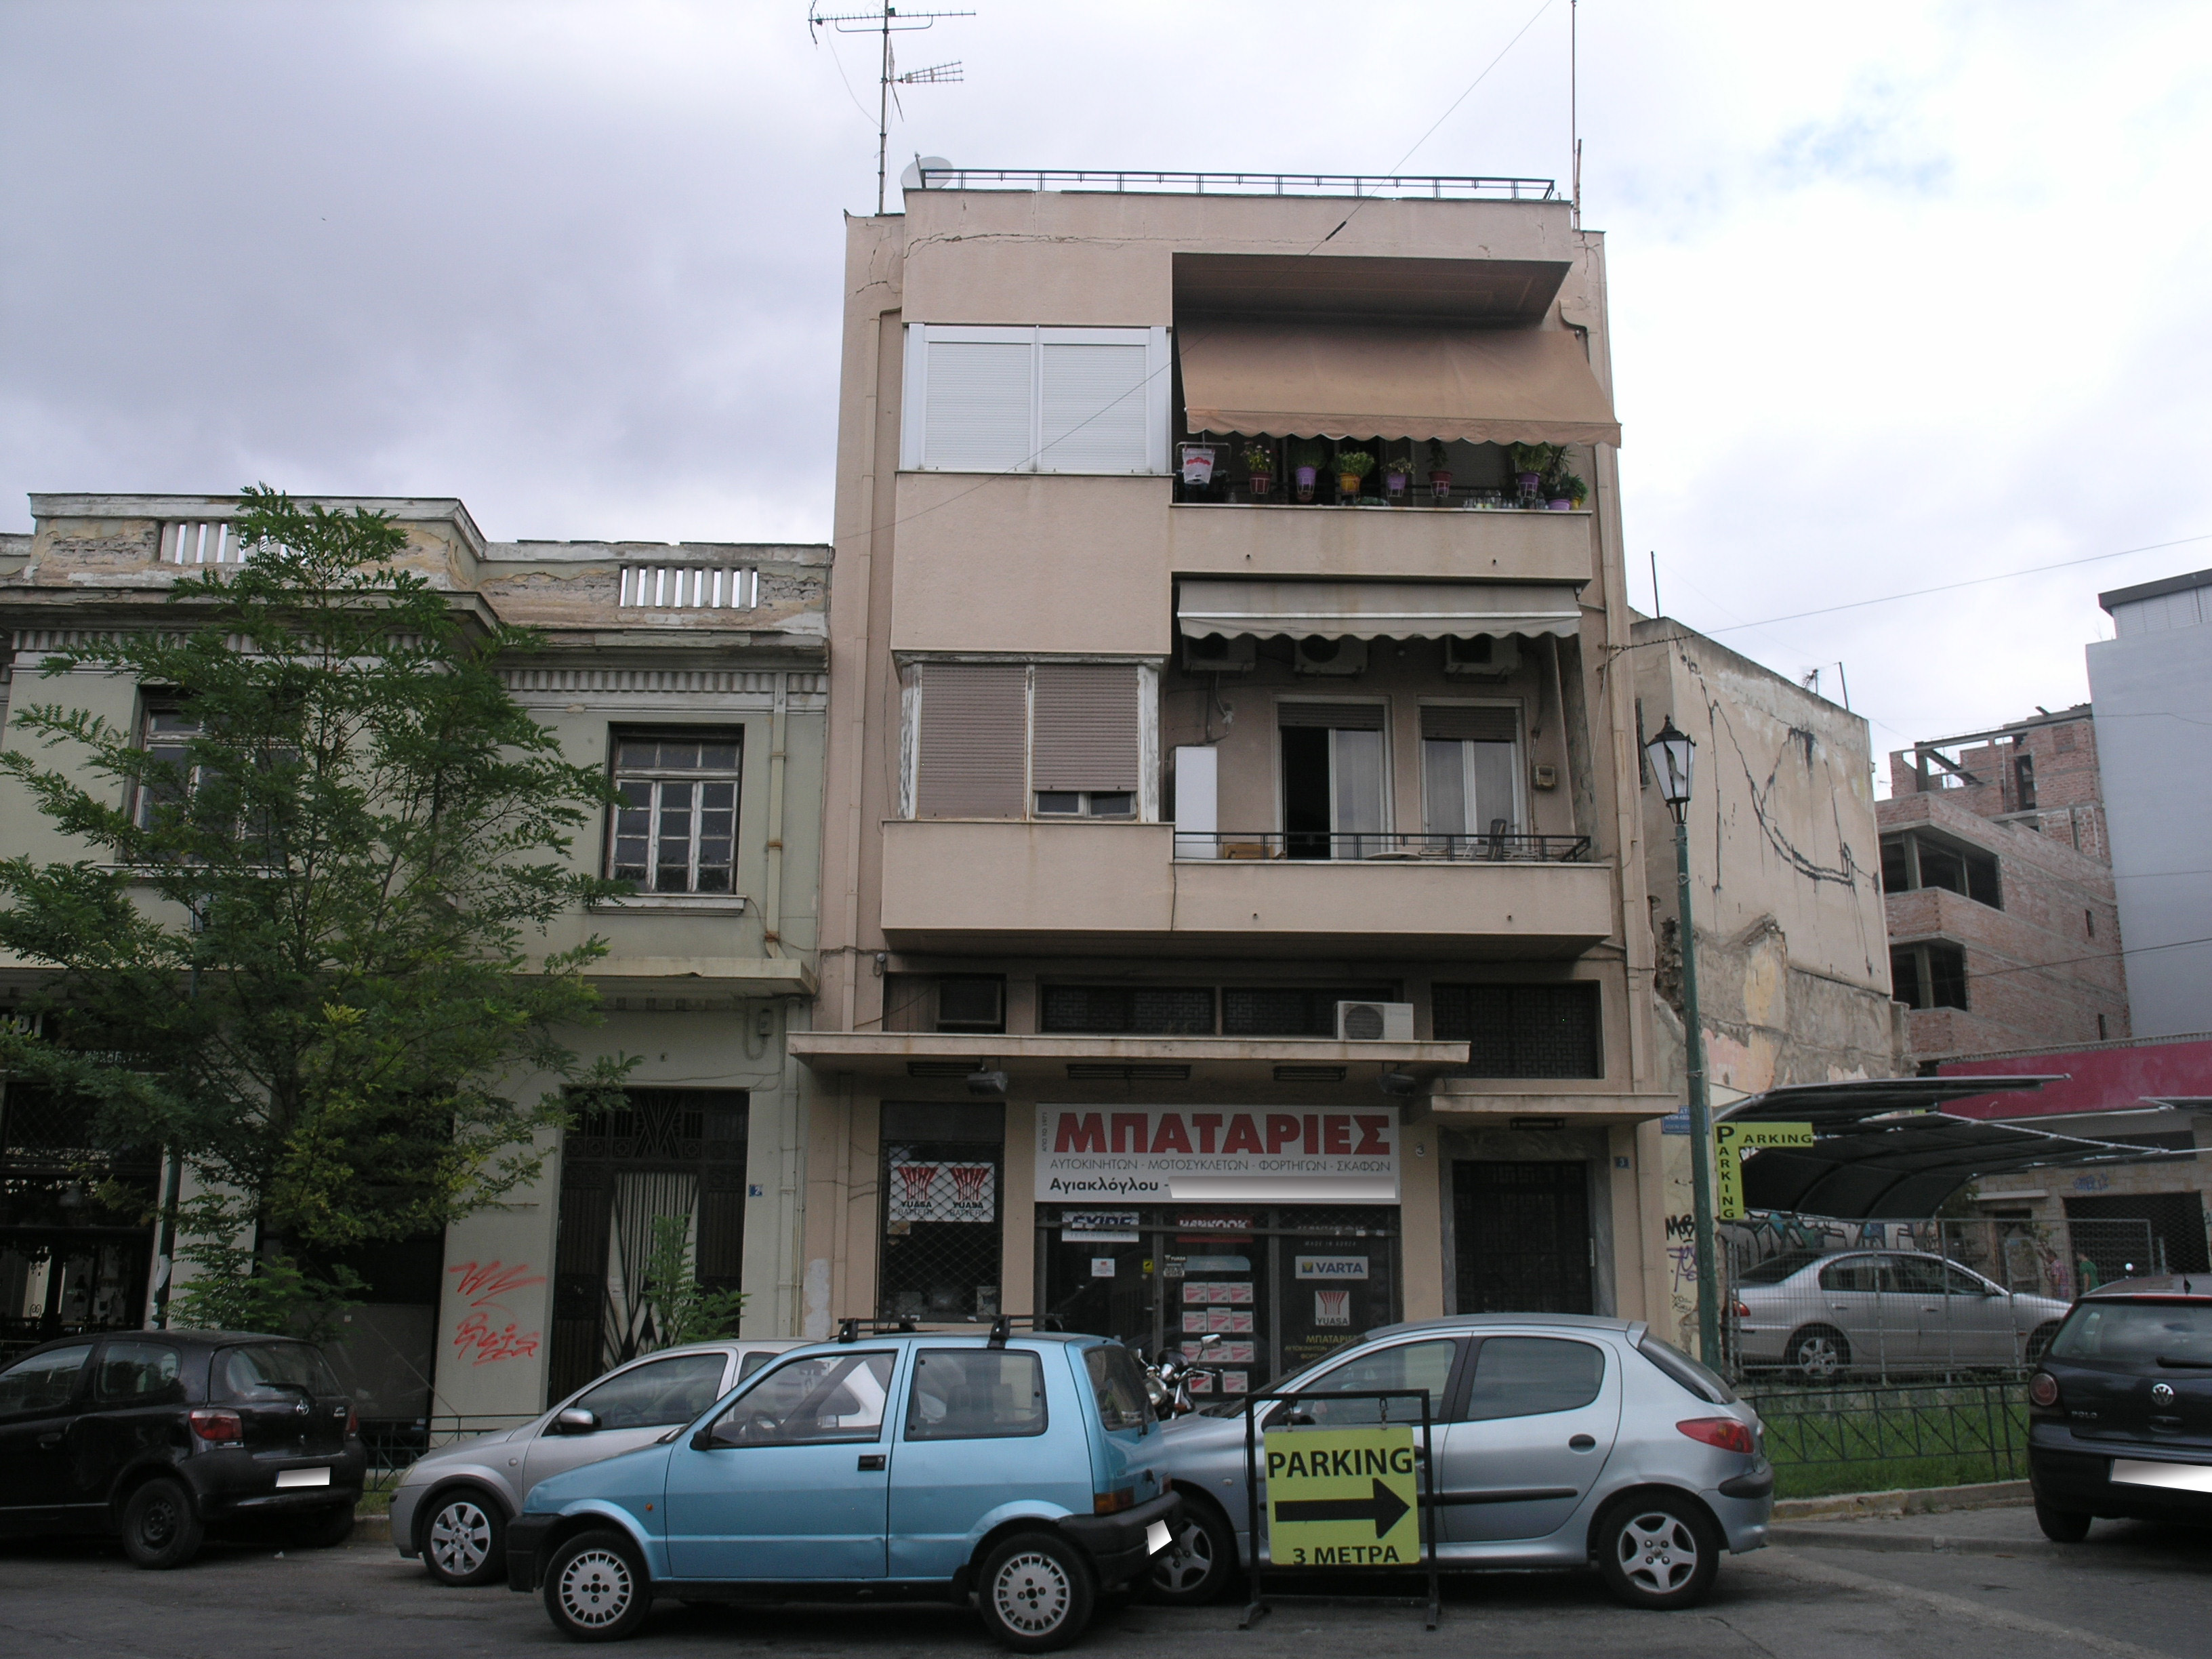 View of main facade.